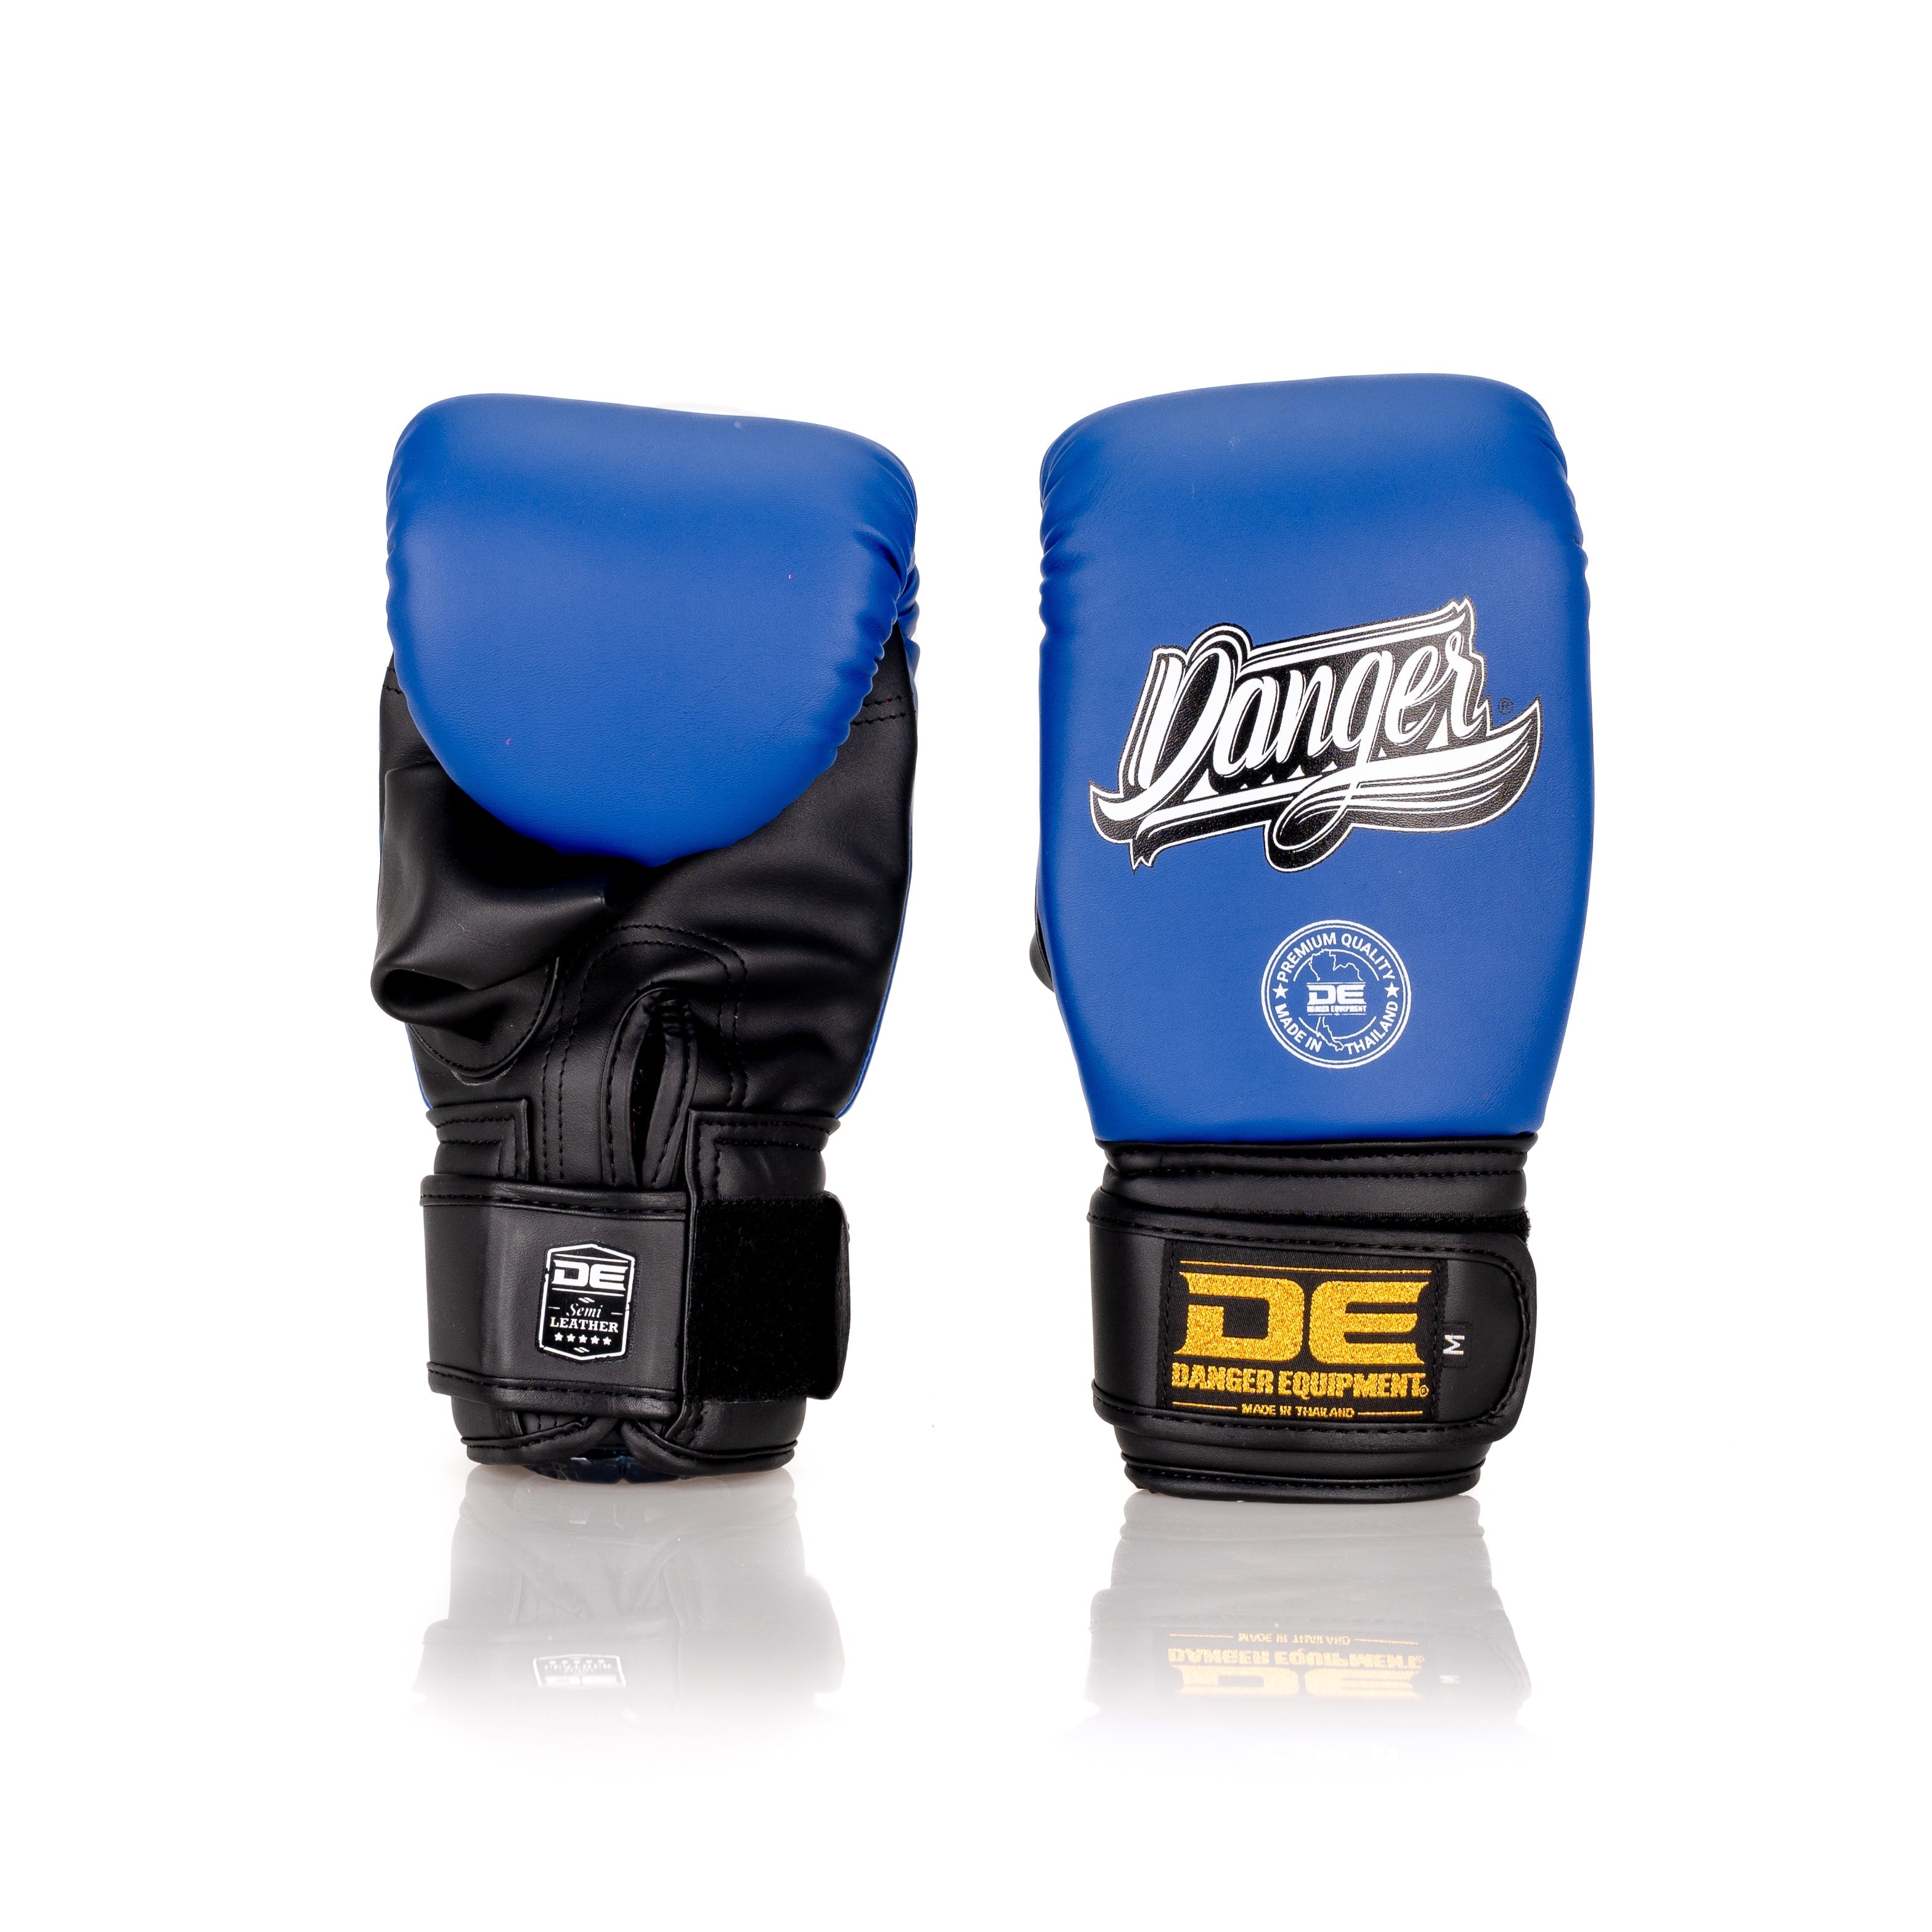  Black/Blue Danger Equipment Bag Boxing Gloves Front/Back